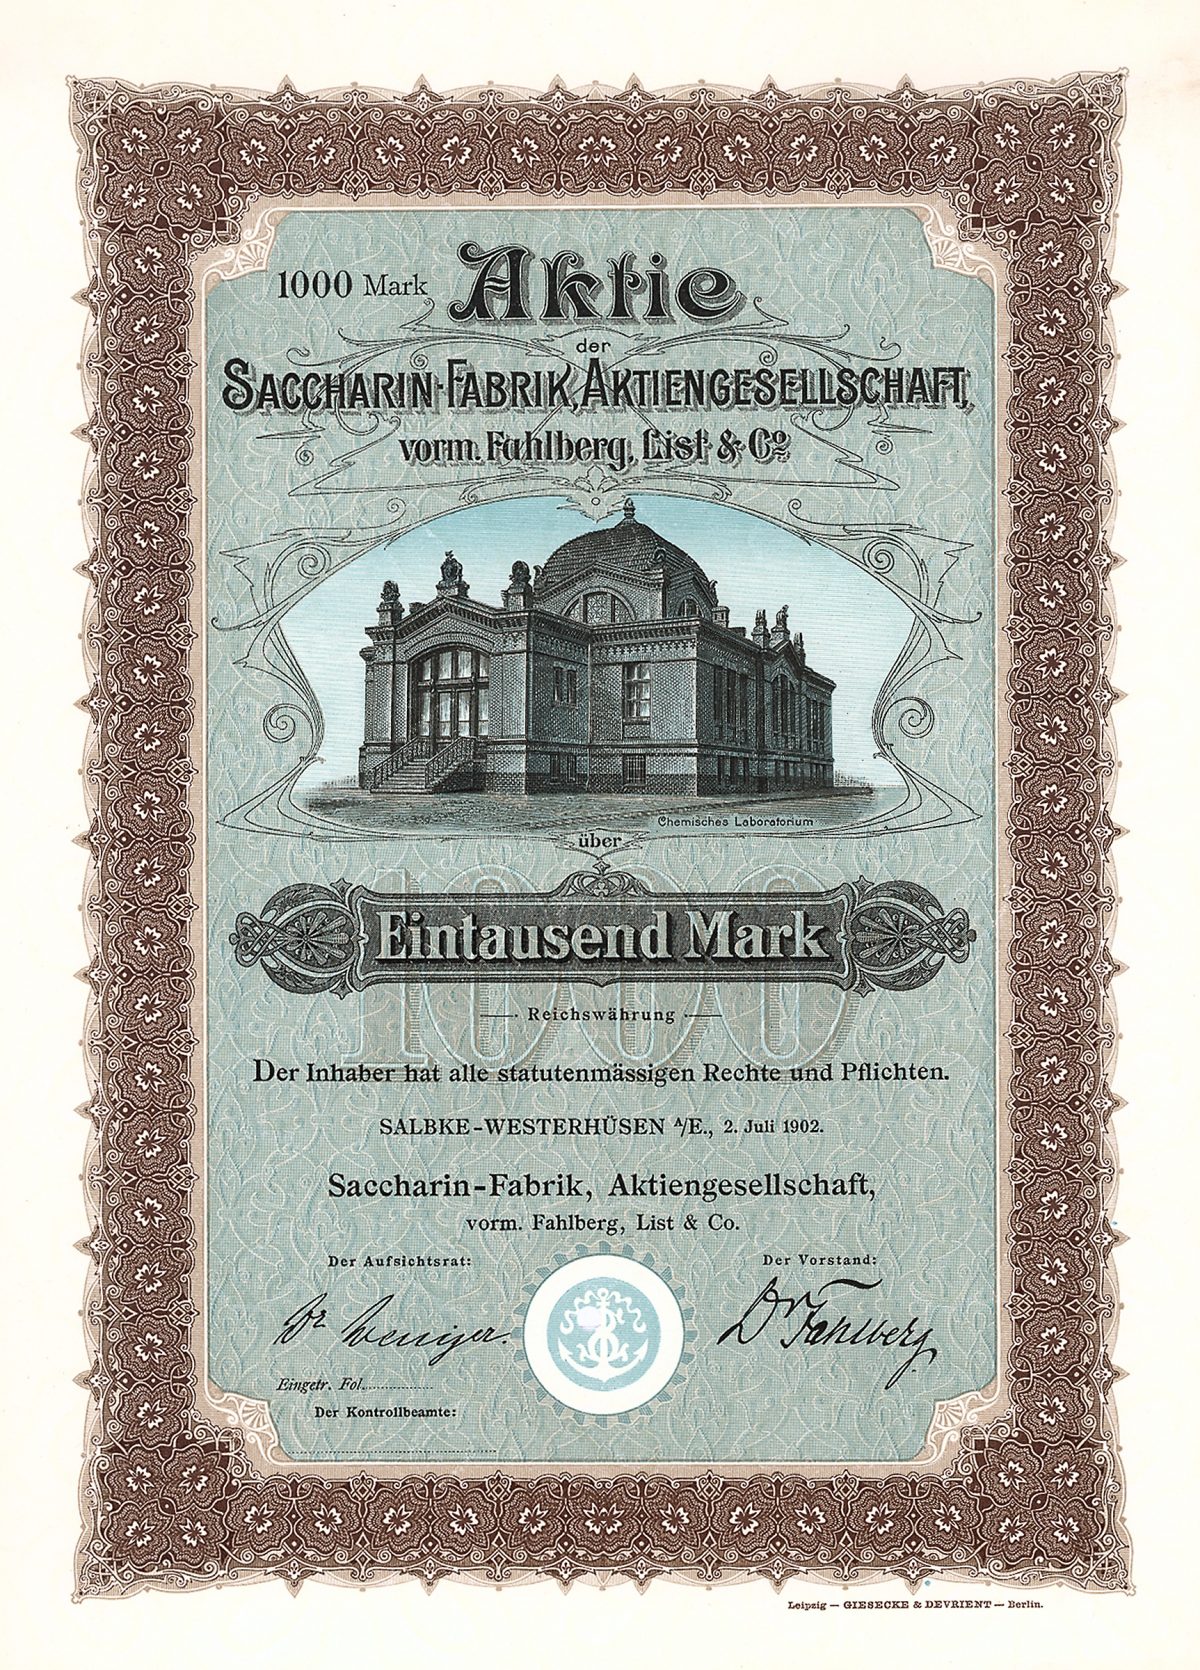 Saccharin-Fabrik AG vorm. Fahlberg, List & Co., Magdeburg, Gründeraktie von 1902